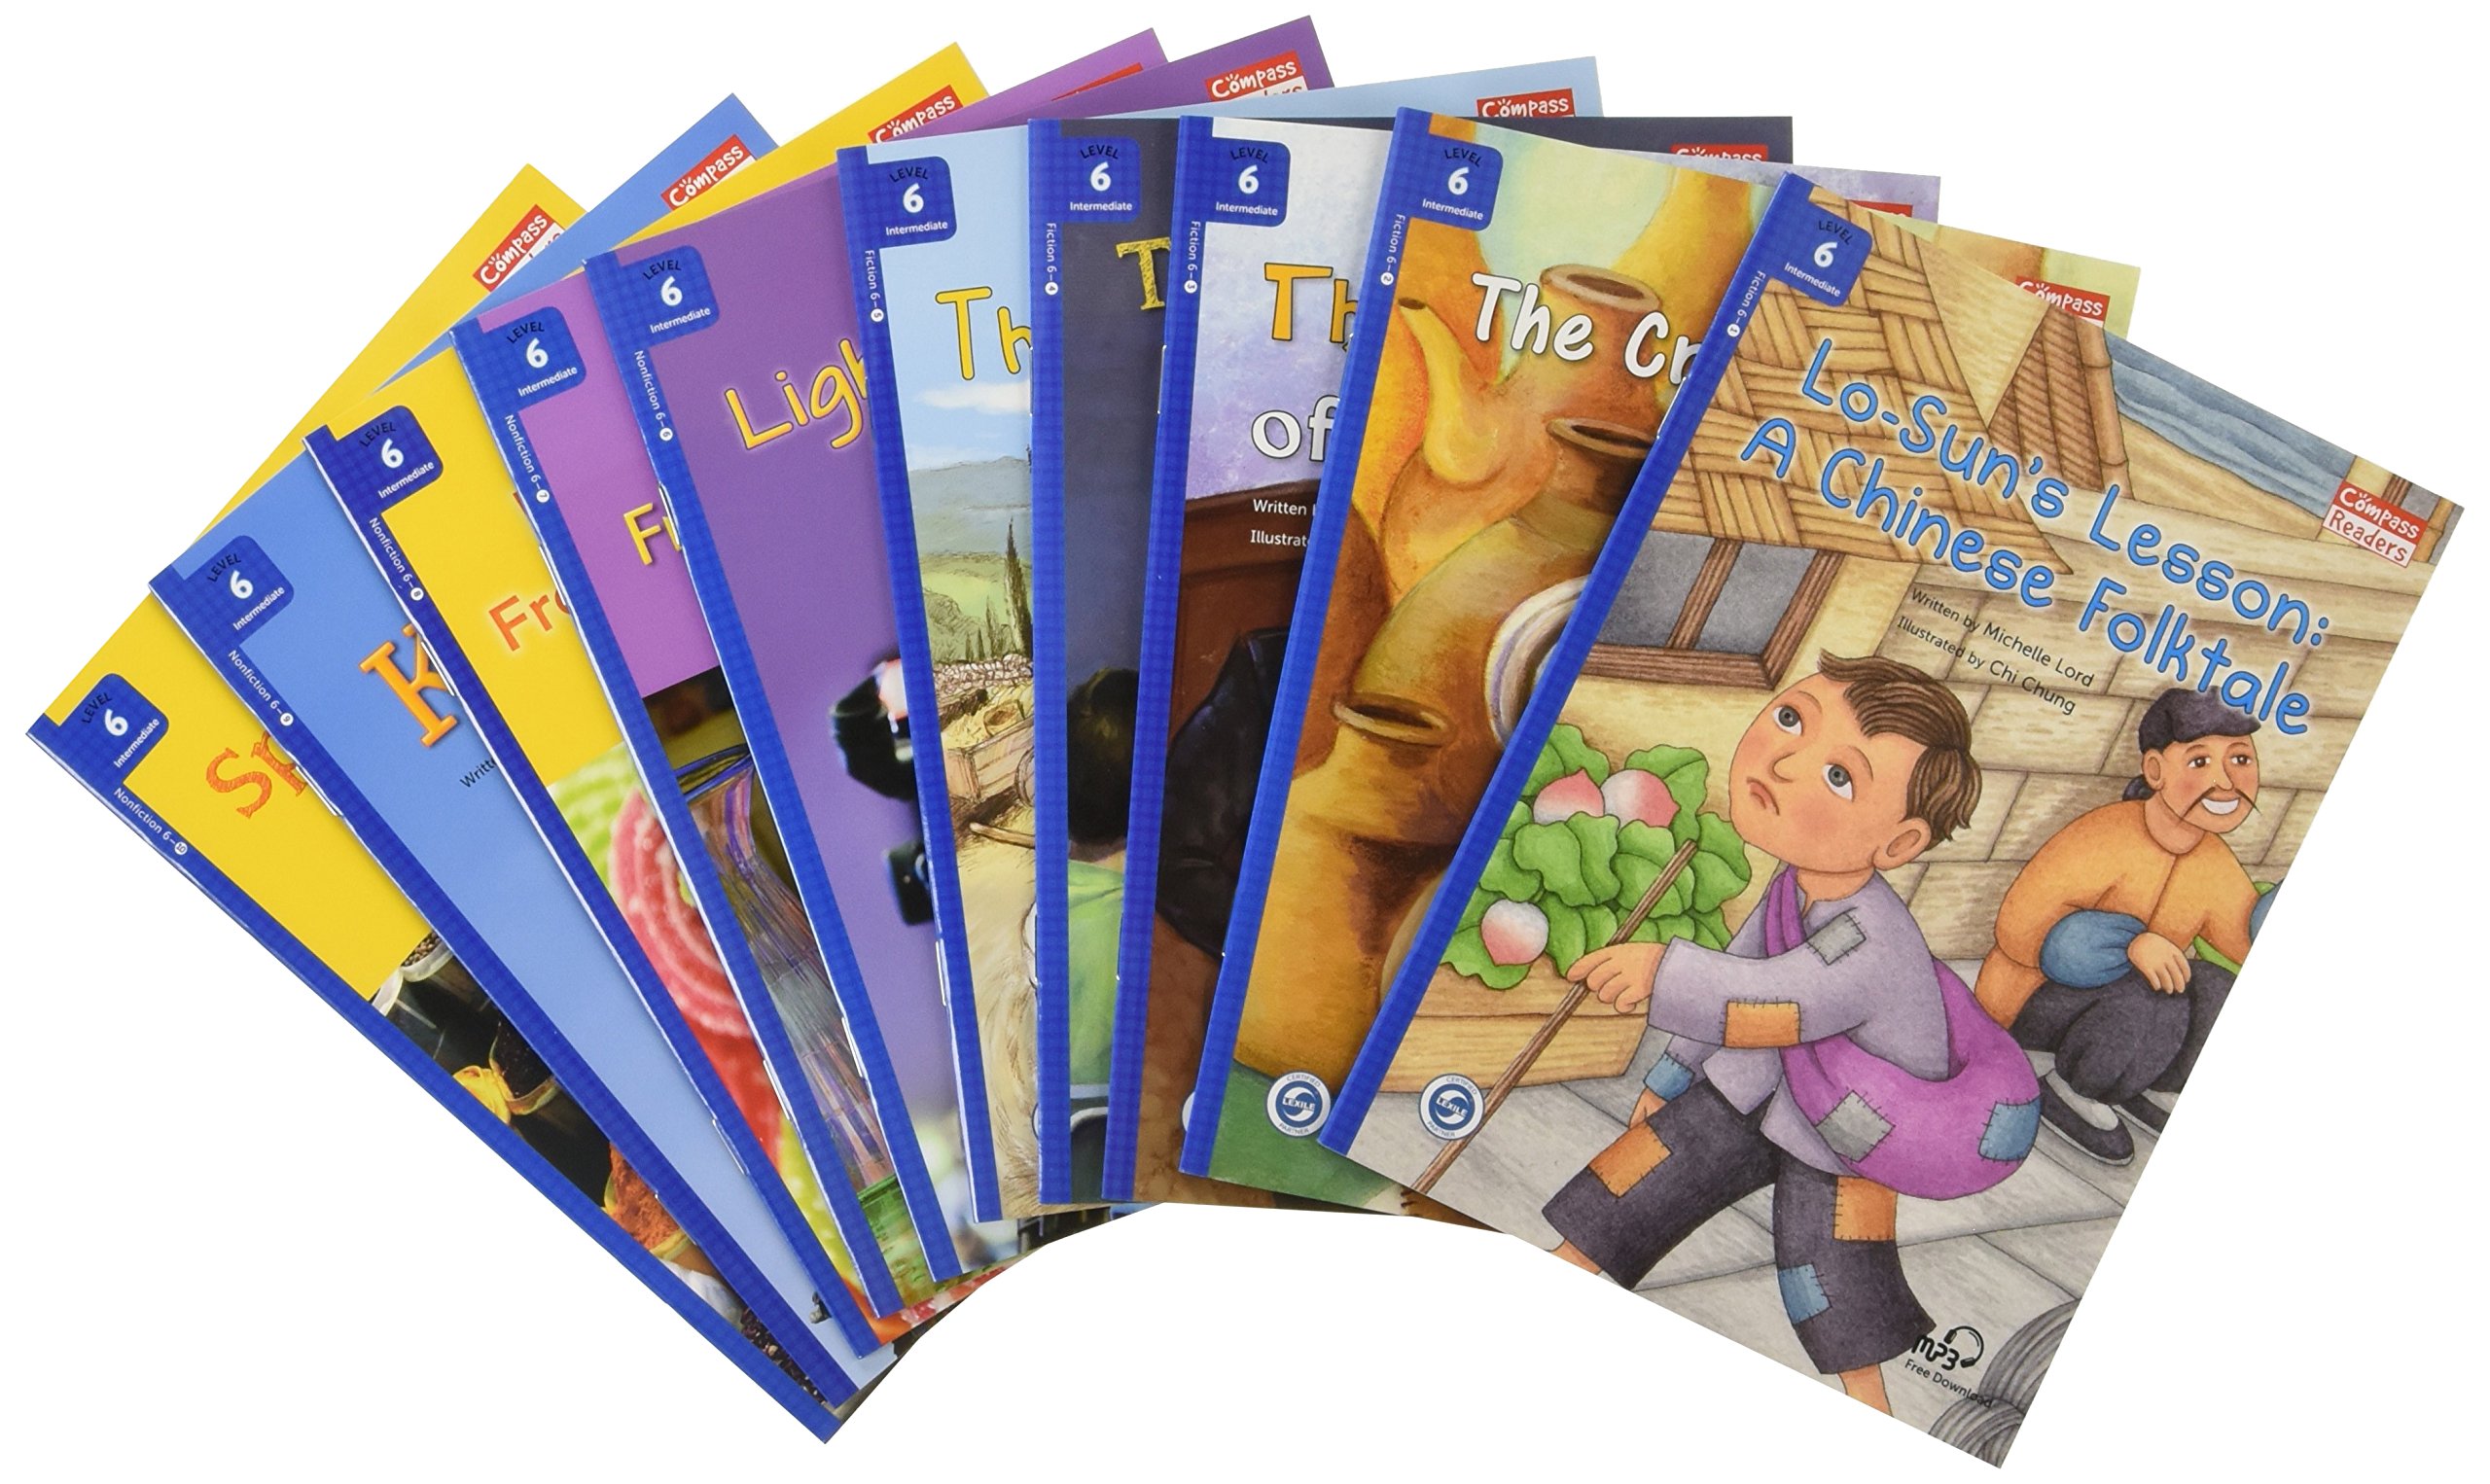 Tuyển tập sách Compass Reading Level 6 trọn bộ 10 quyển có audio mp3 miễn phí nghe kèm sách giúp bé học tiếng Anh